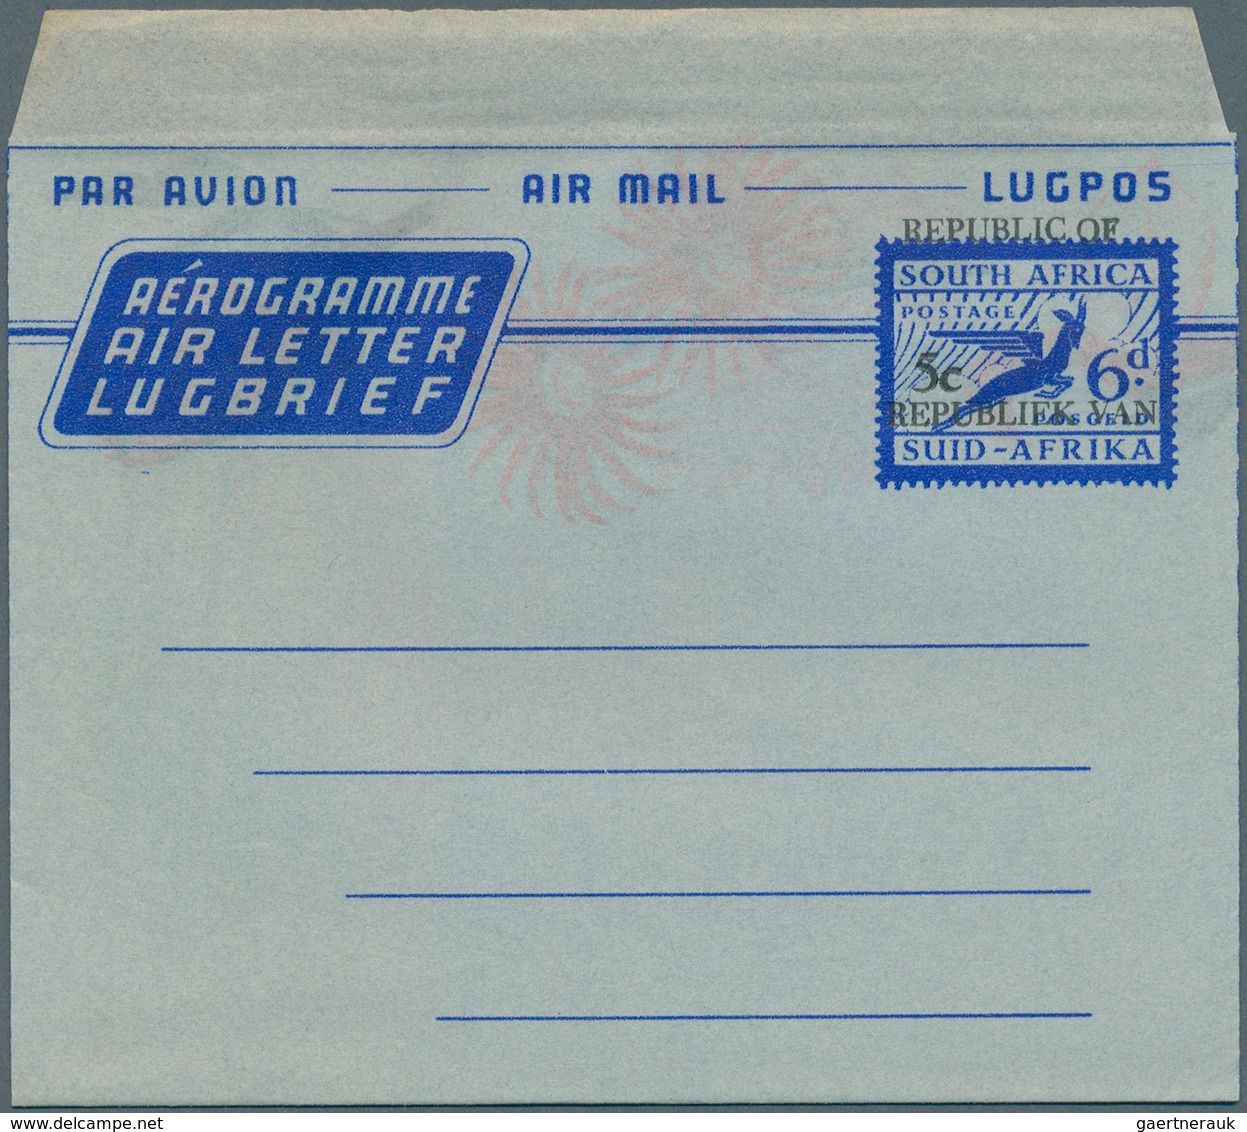 Südafrika - Ganzsachen: 1945/1995 (ca.), accumulation with about 800 unused airletters, AEROGRAMMES